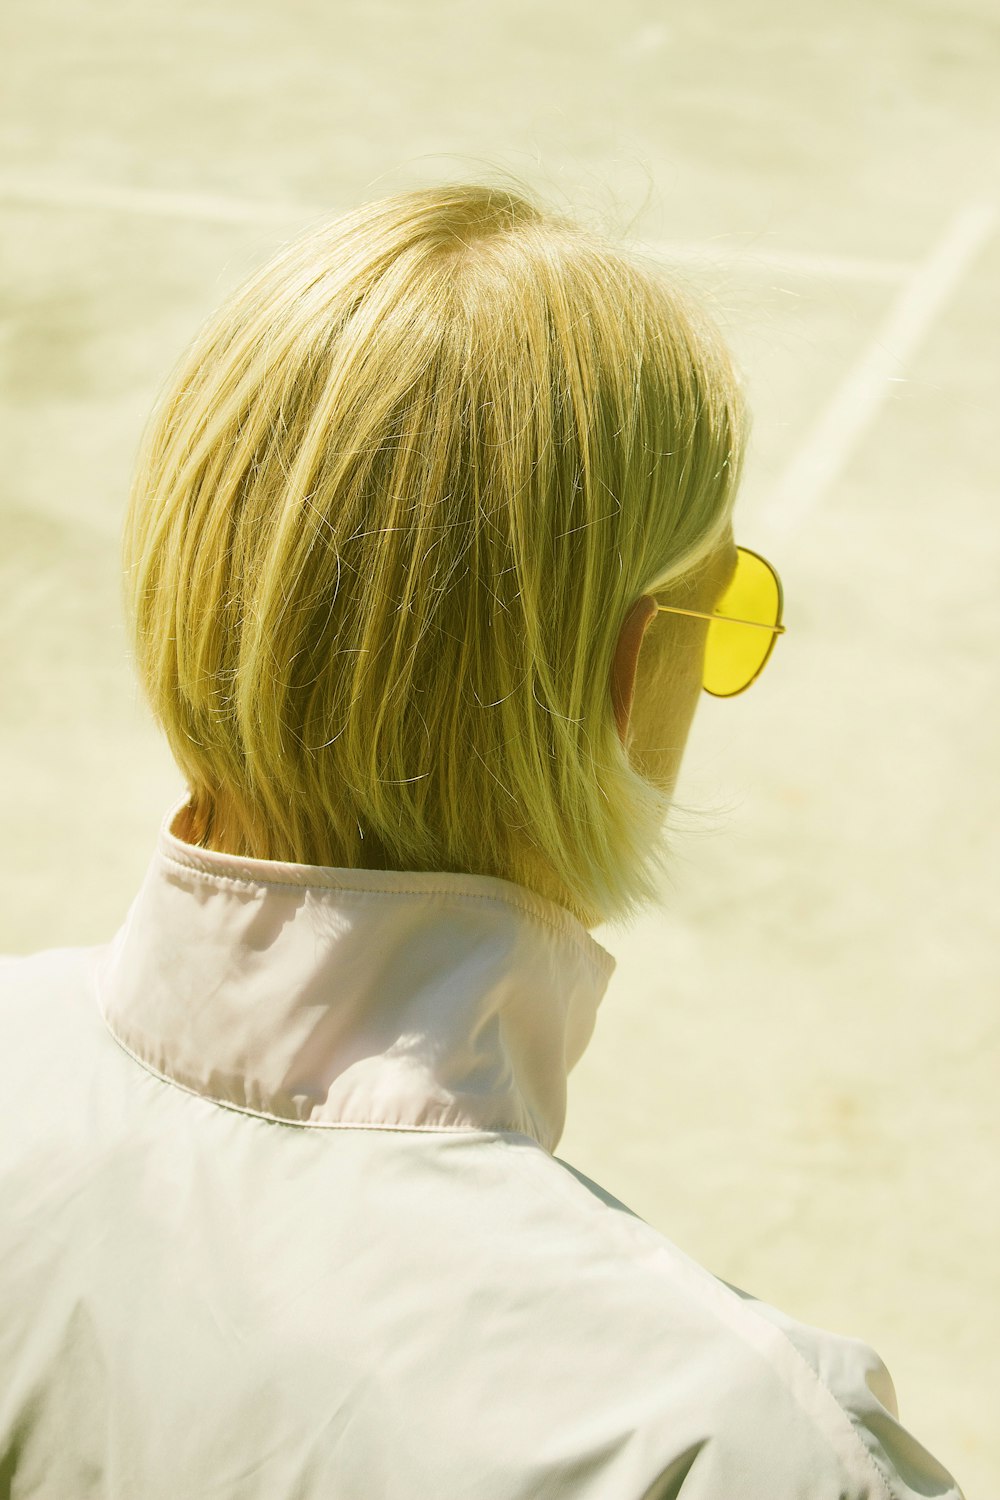 pessoa usando óculos de sol amarelos